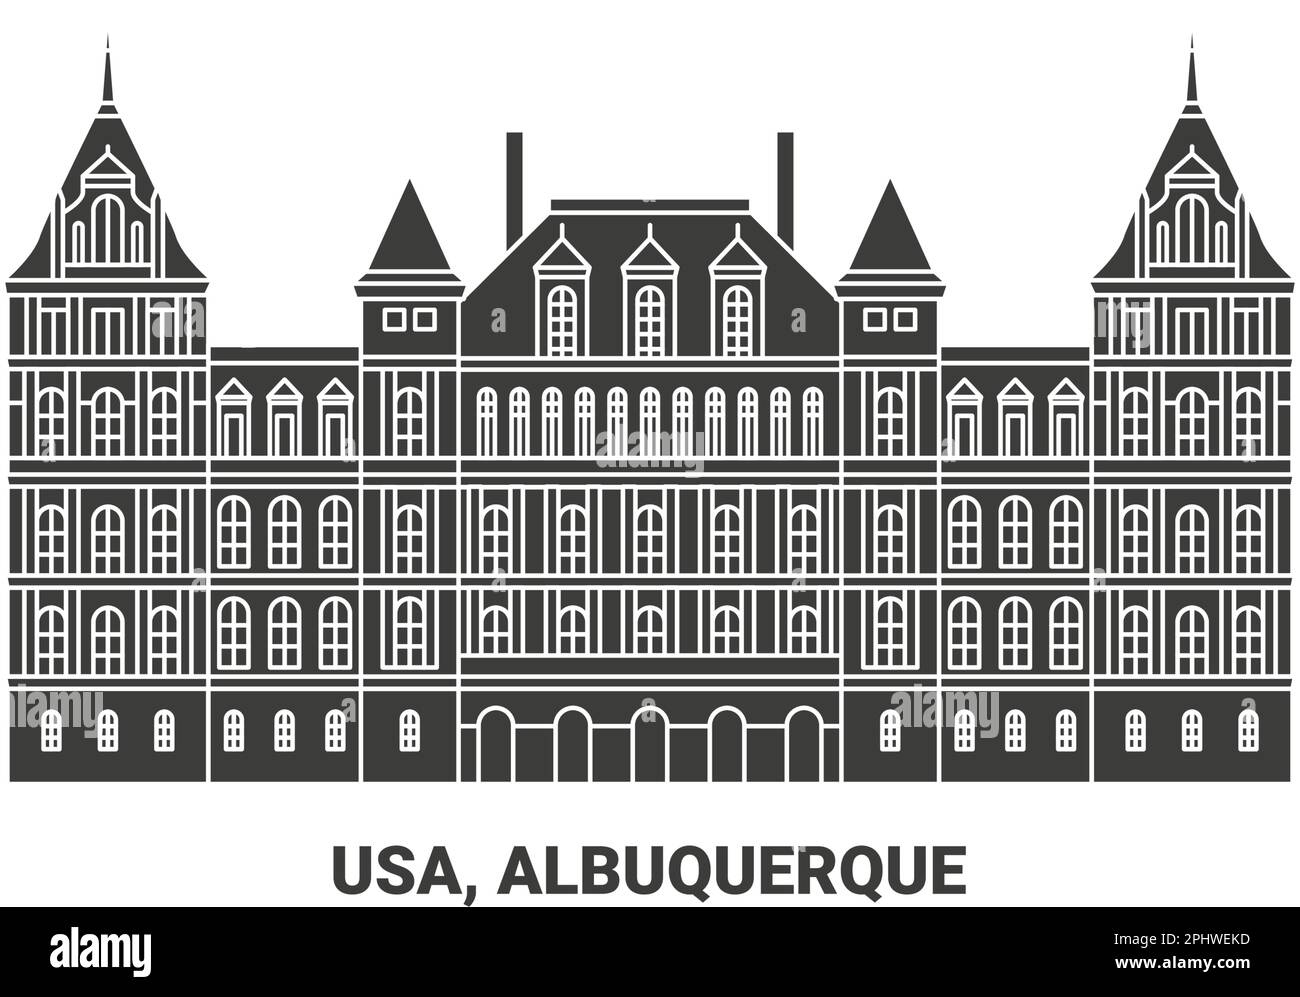 Usa, Albuquerque, travel landmark vector illustration Stock Vector